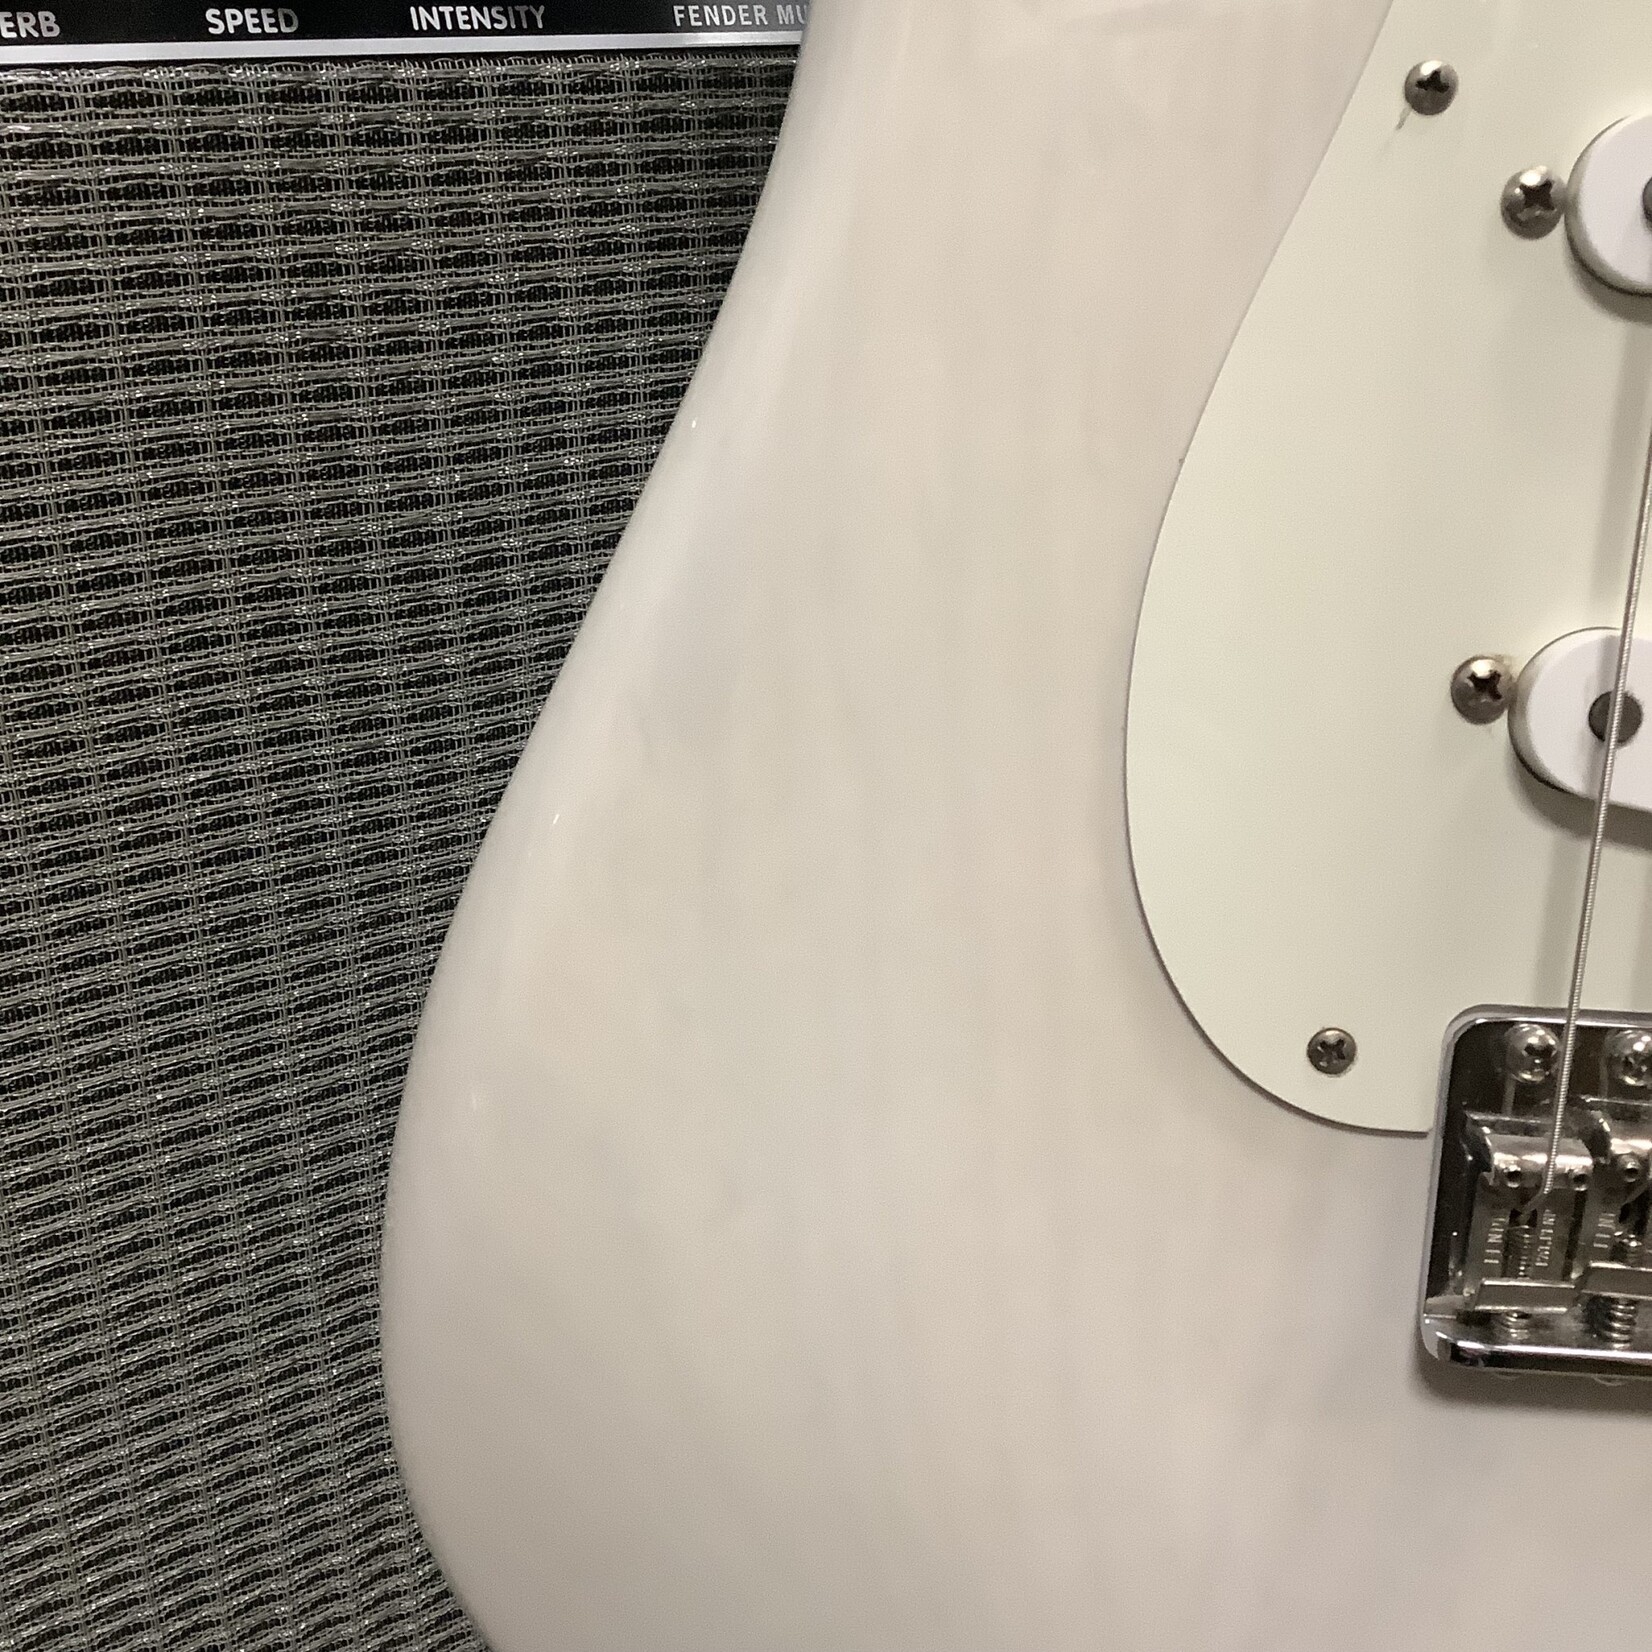 Fender 2018 Fender Strat USA See Through Blonde